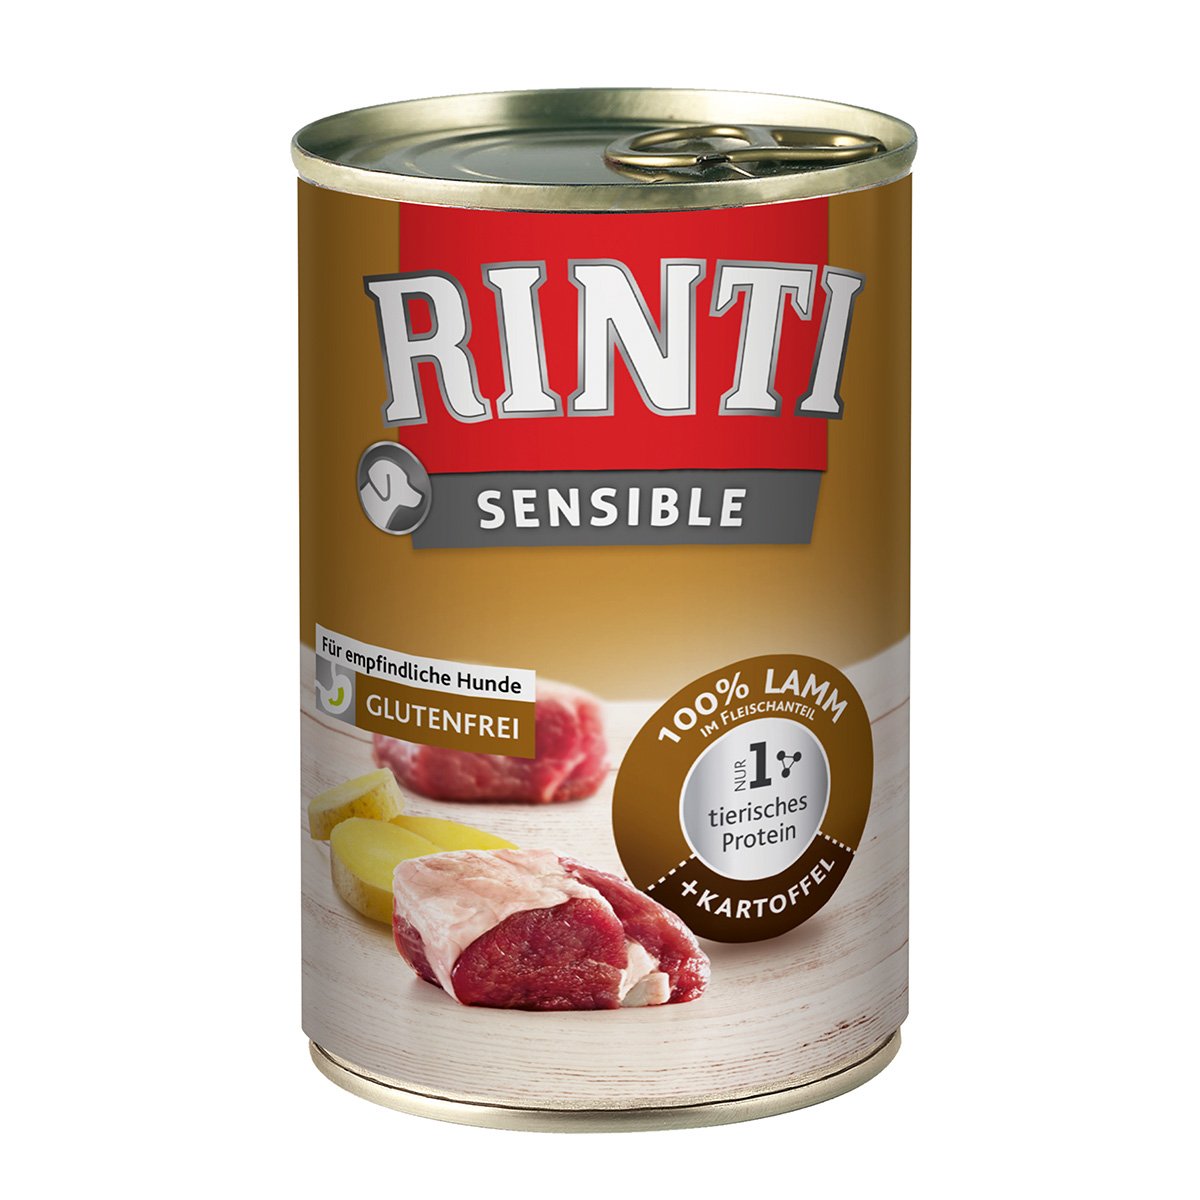 Rinti Sensible Lamm & Kartoffel 24x400g von Rinti